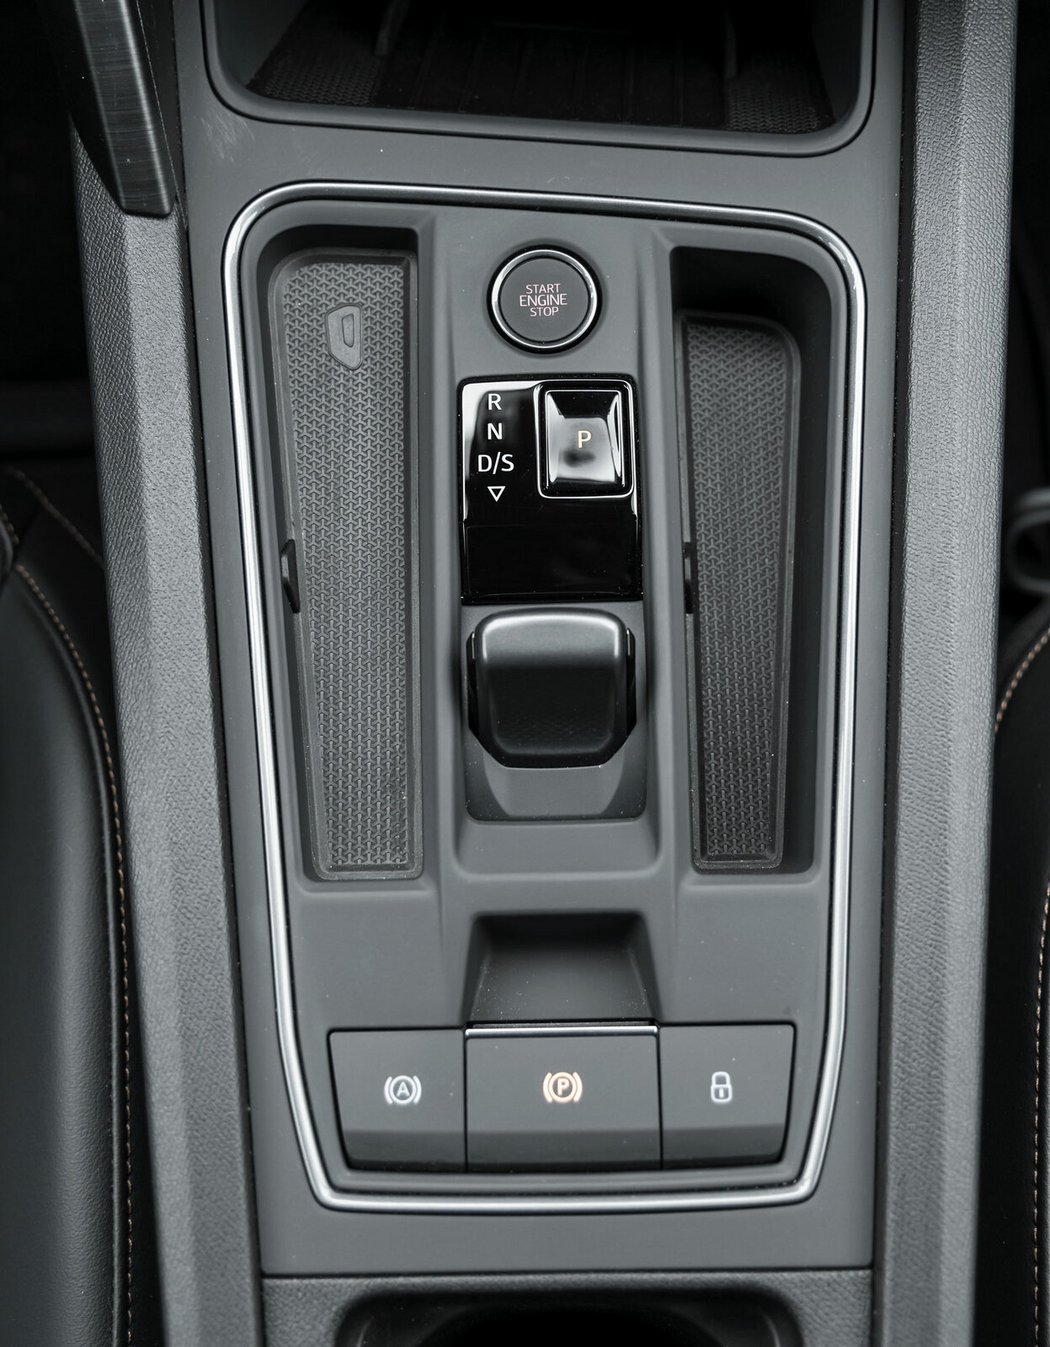 Malý volič automatu známe i z jiných modelů koncernu VW. Pádla pod volantem cupry slouží k manuální změně převodových stupňů.